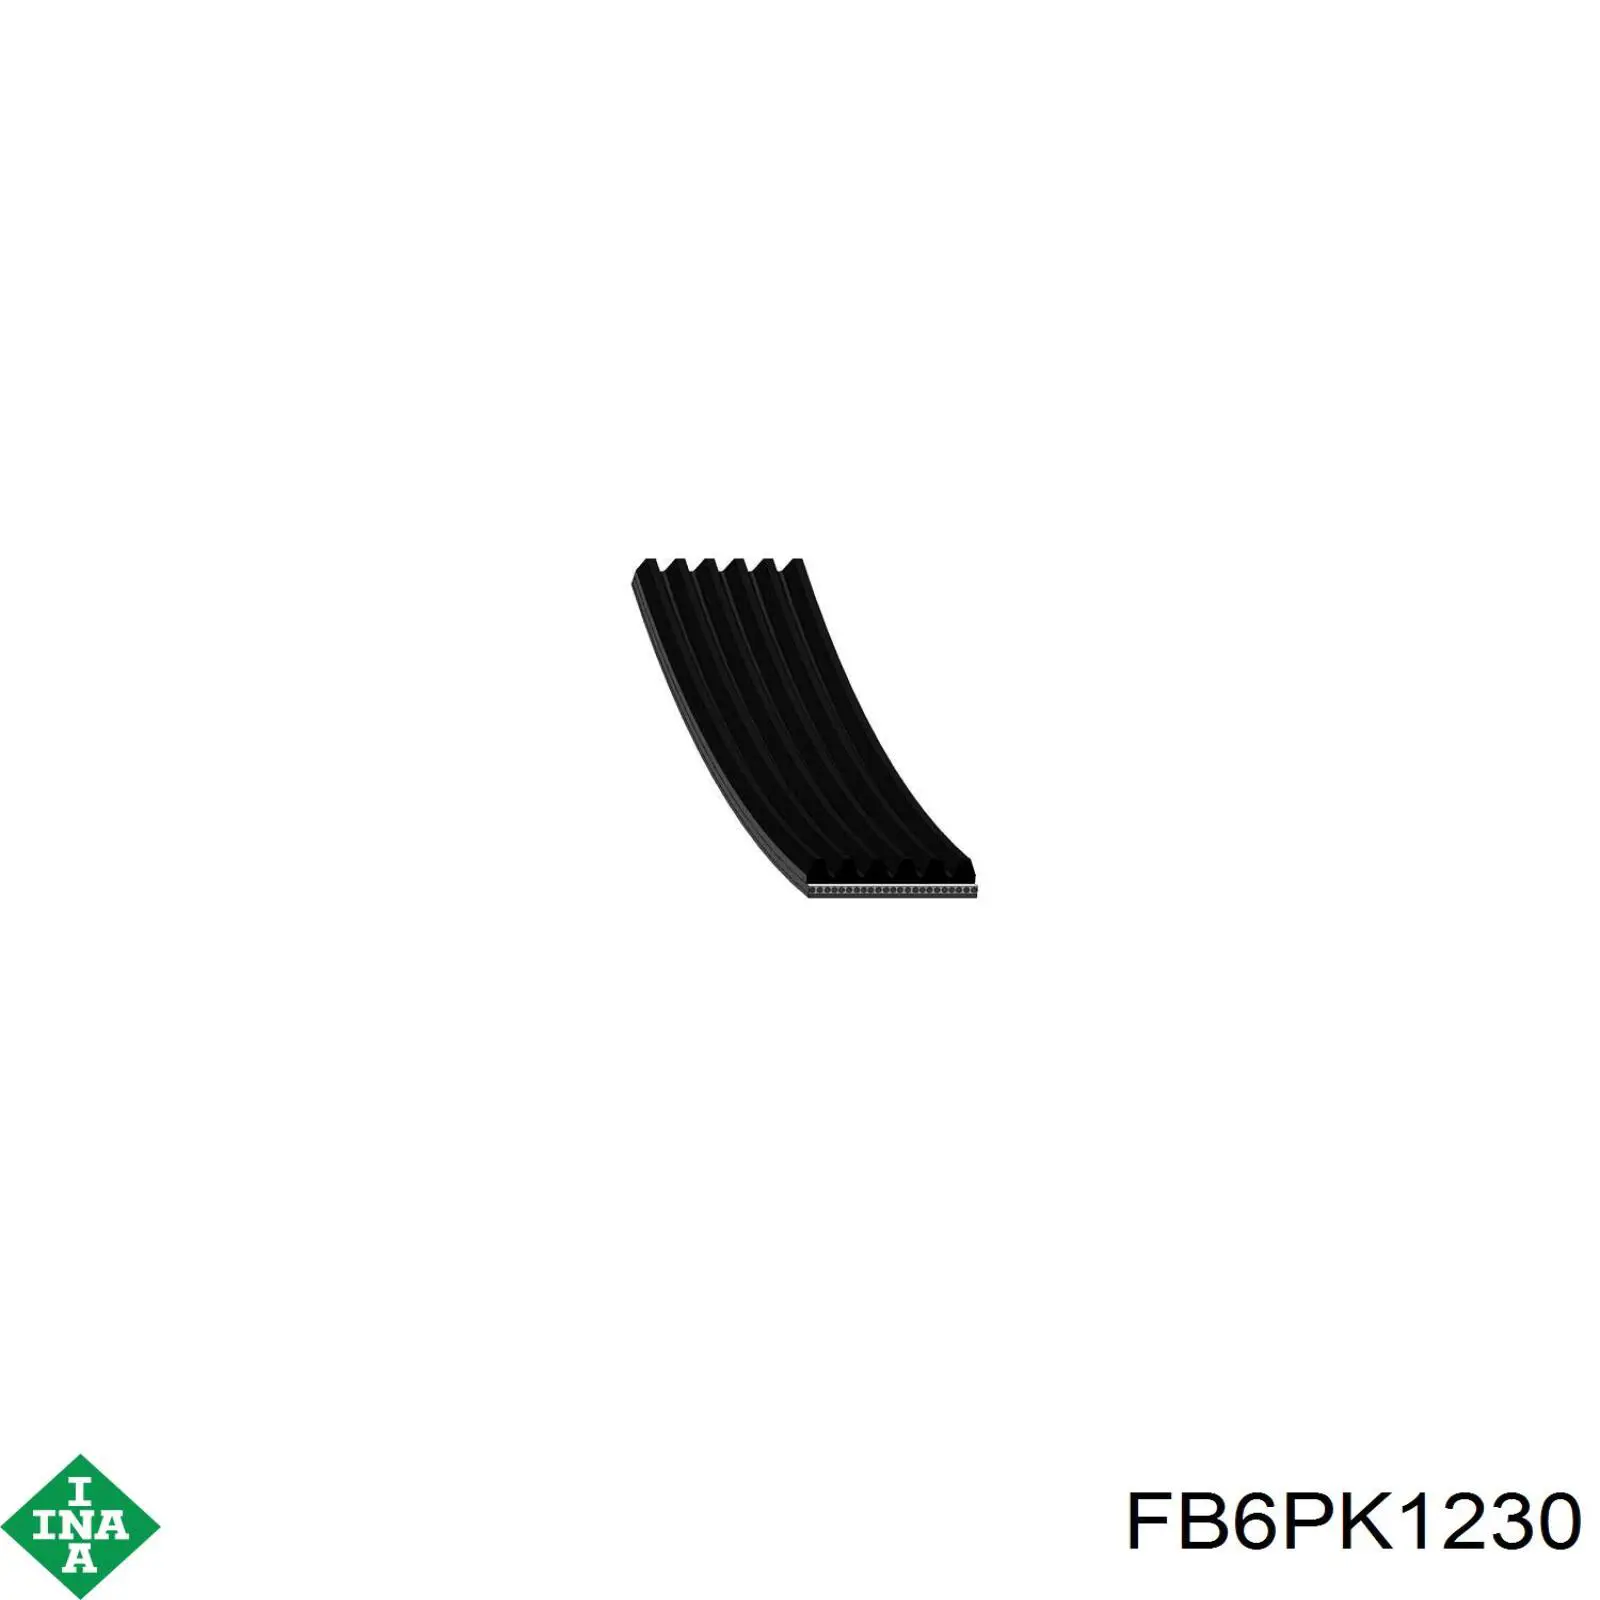 FB6PK1230 INA correa trapezoidal